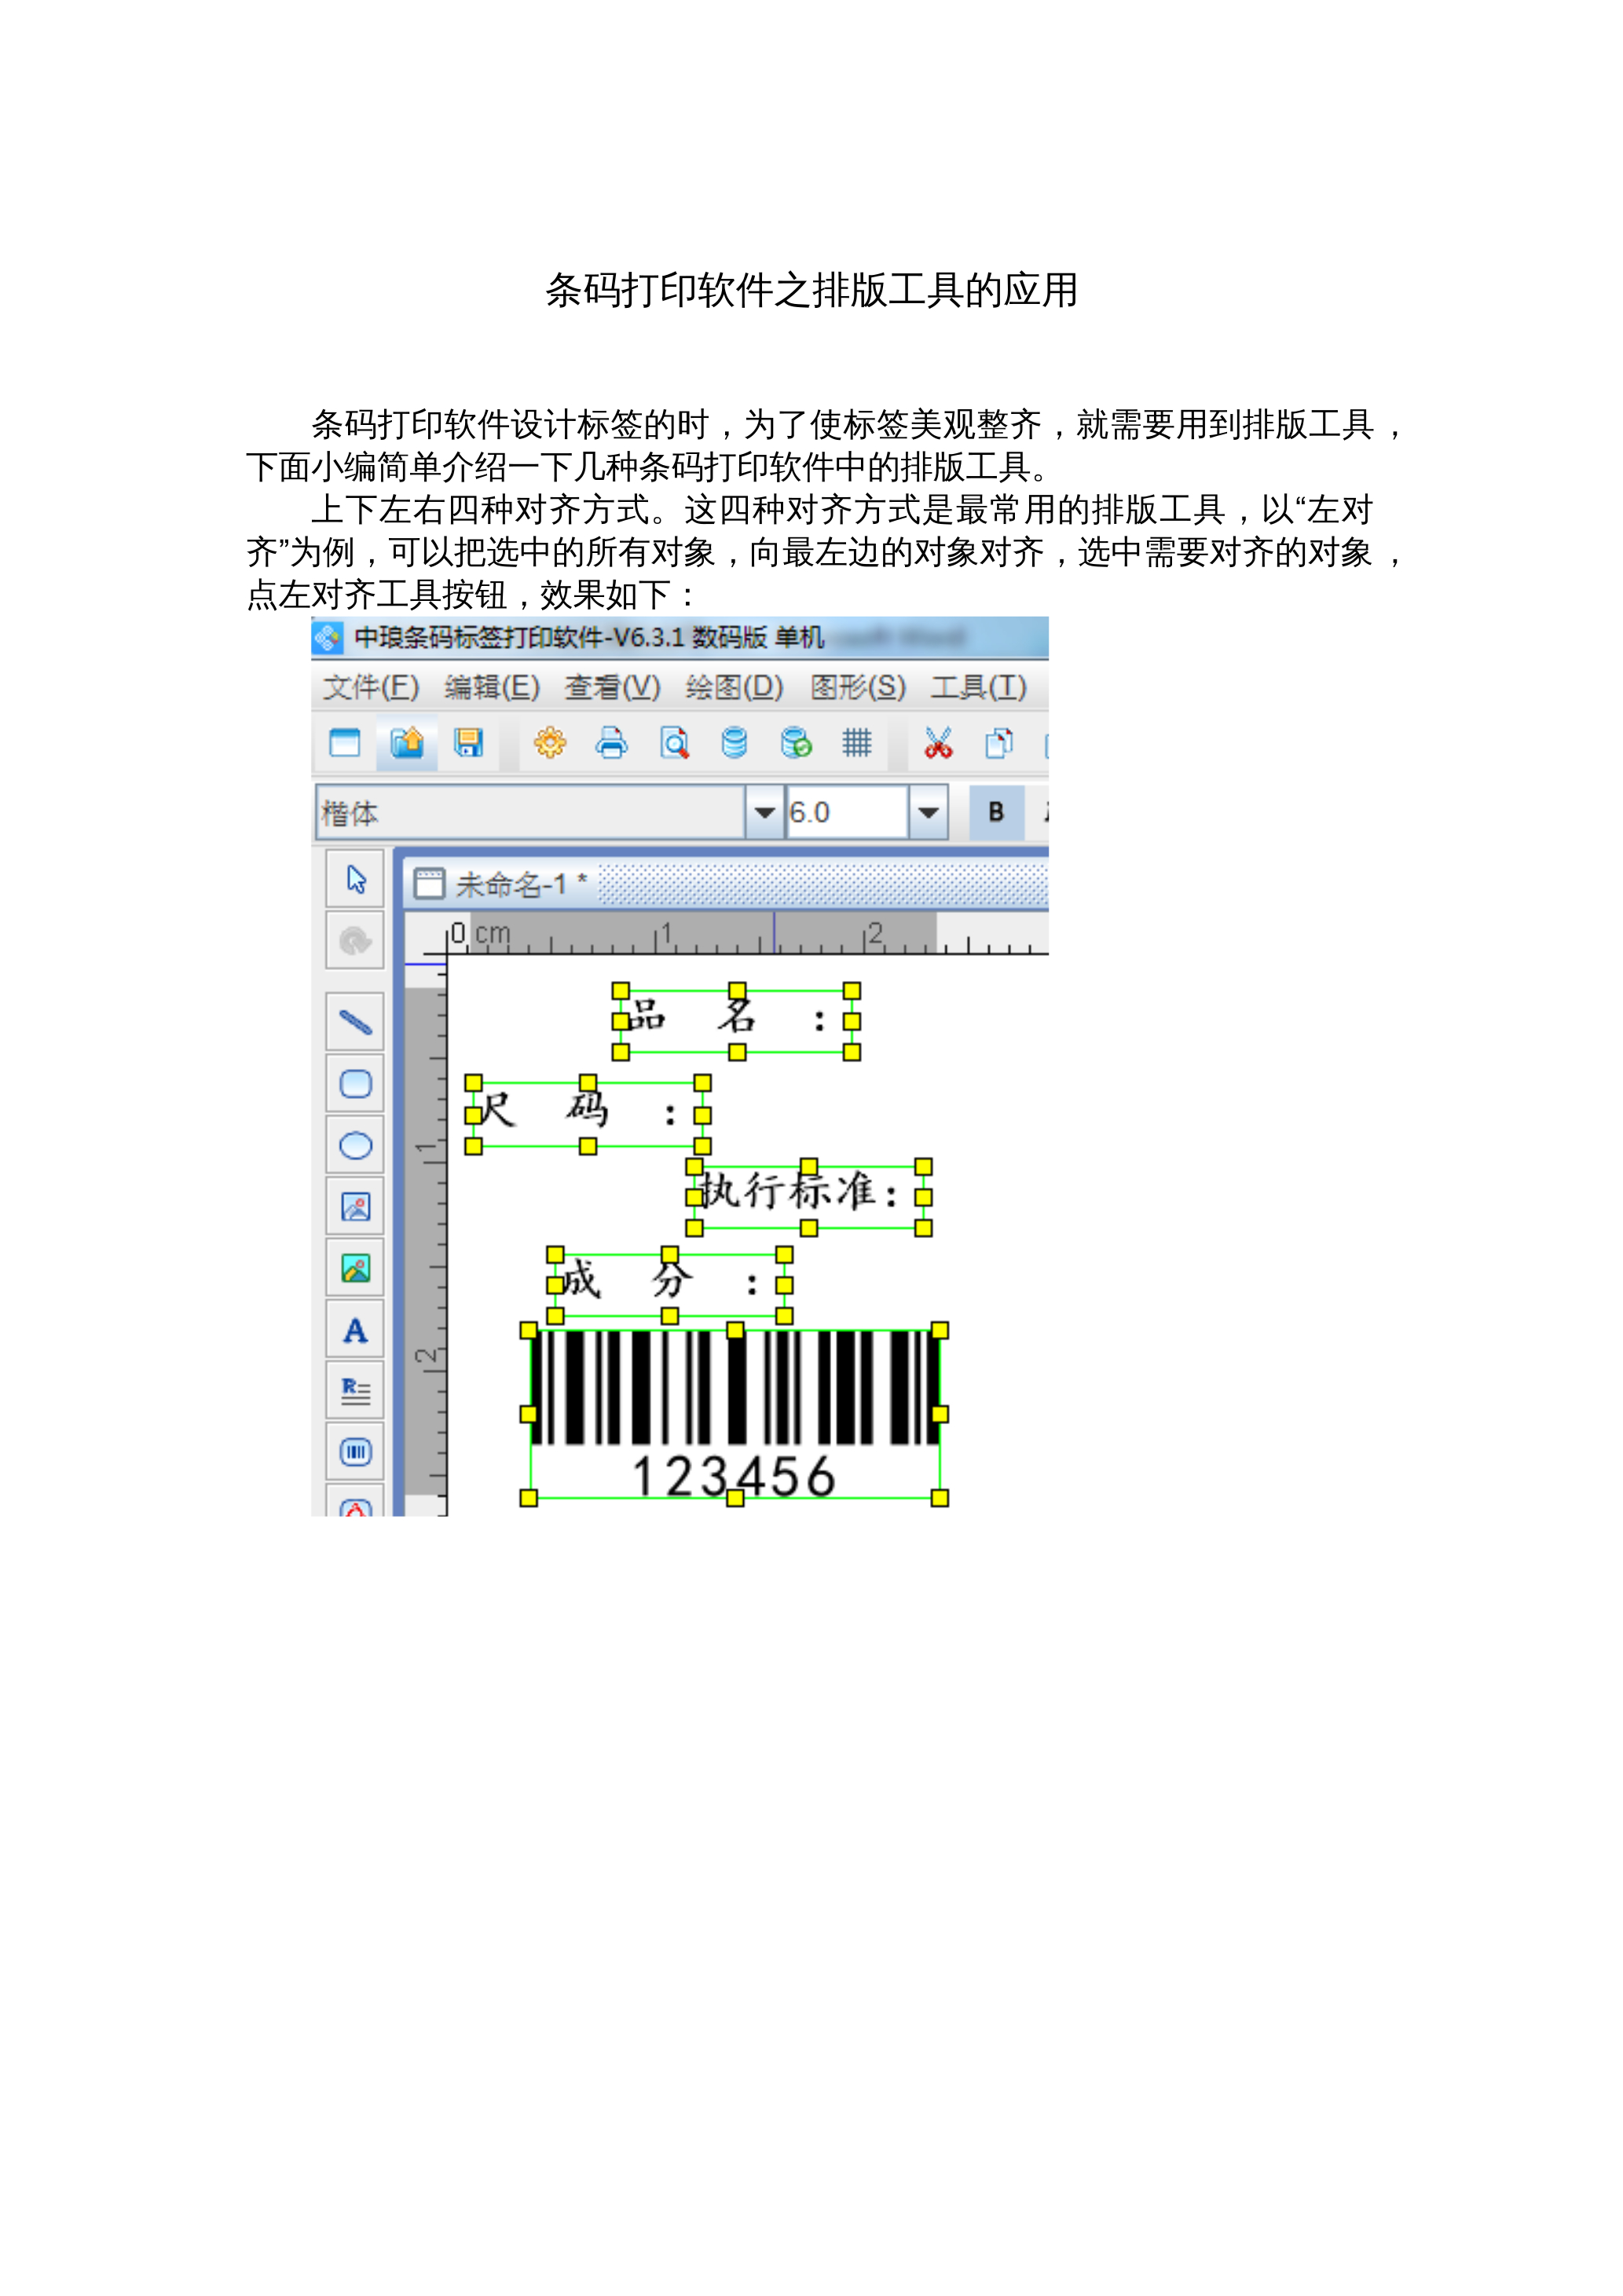 条码打印软件中排版工具的应用 封面